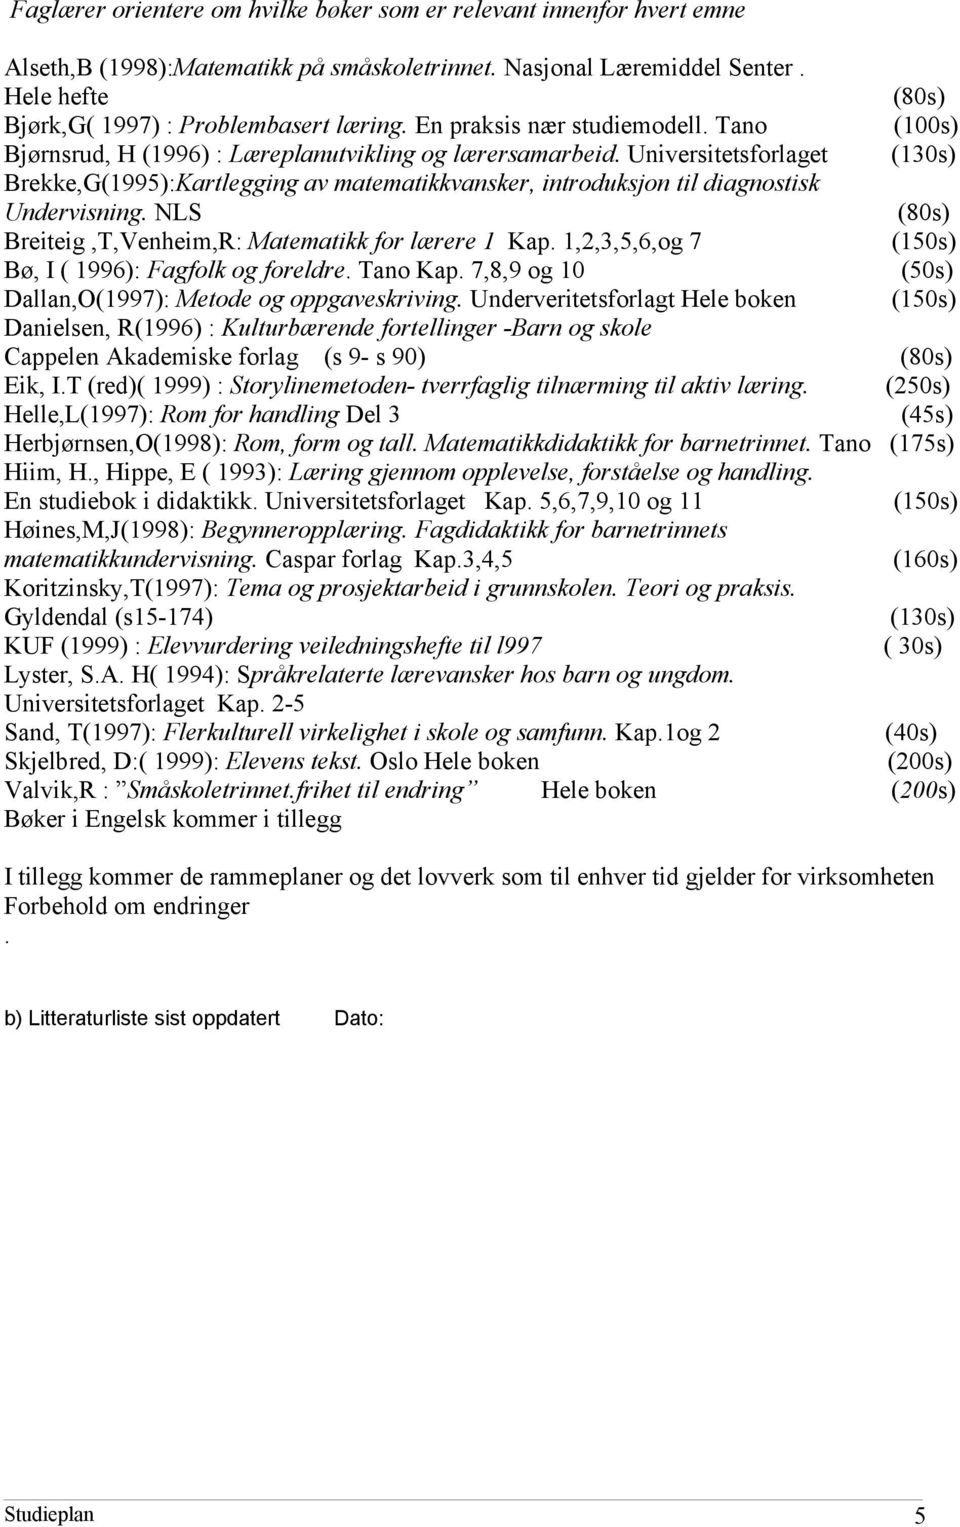 Universitetsforlaget (130s) Brekke,G(1995):Kartlegging av matematikkvansker, introduksjon til diagnostisk Undervisning. NLS (80s) Breiteig,T,Venheim,R: Matematikk for lærere 1 Kap.